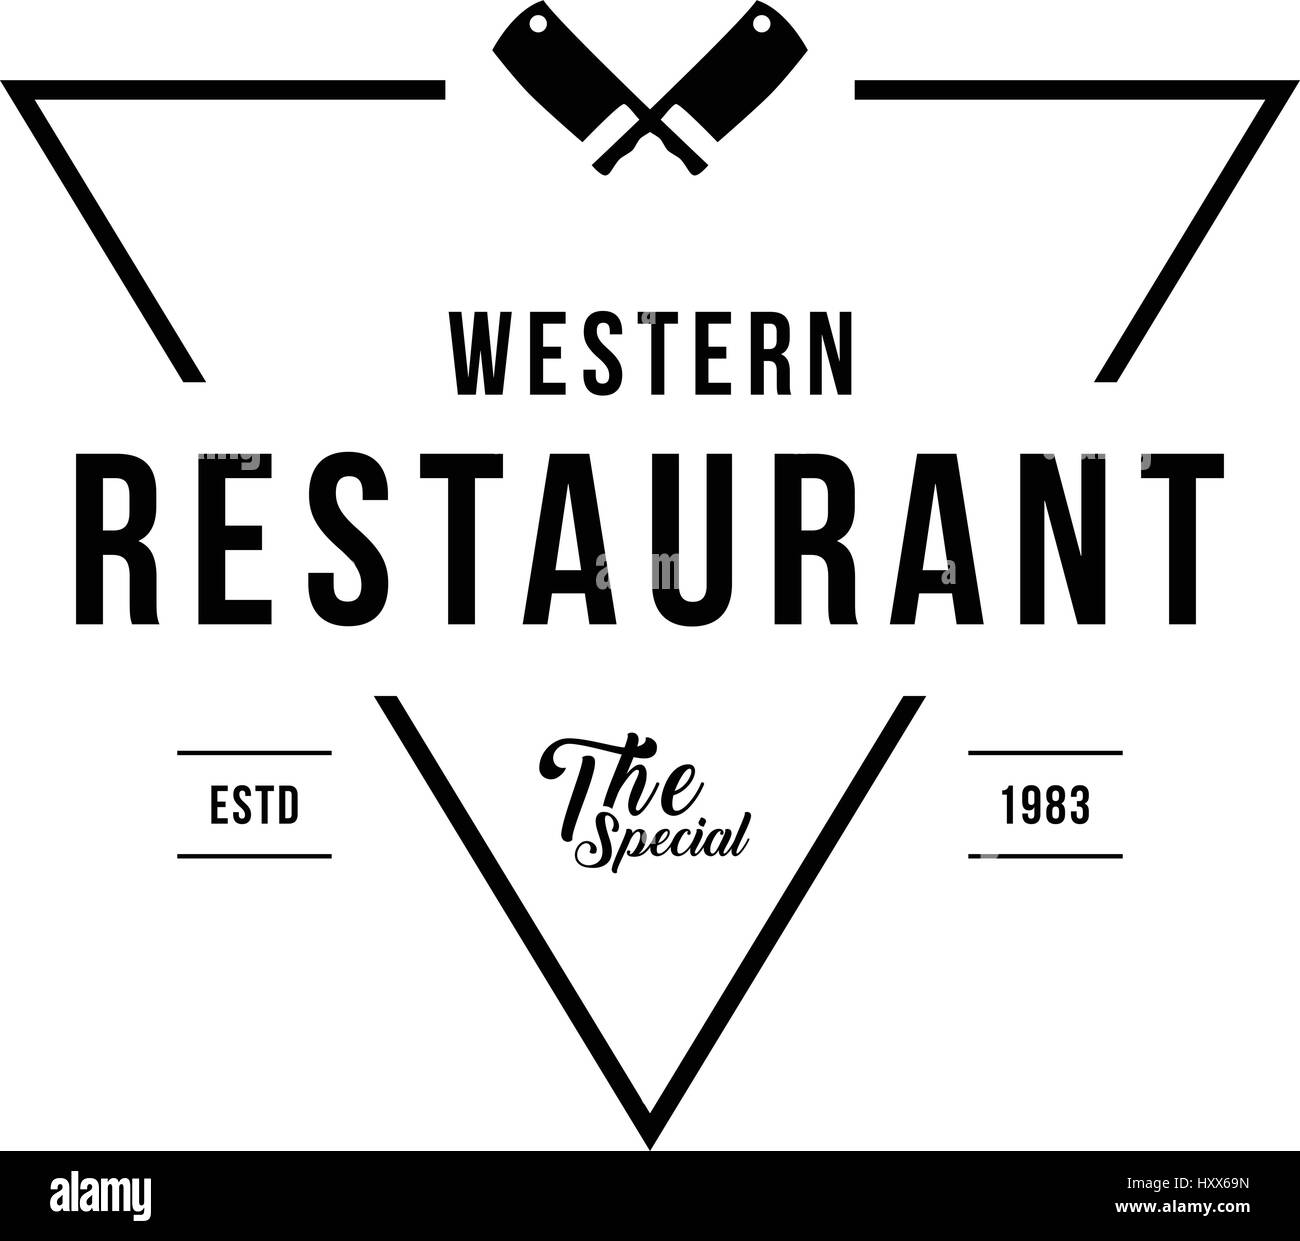 Vintage Restaurant and Cafe label design illustration Stock Vector